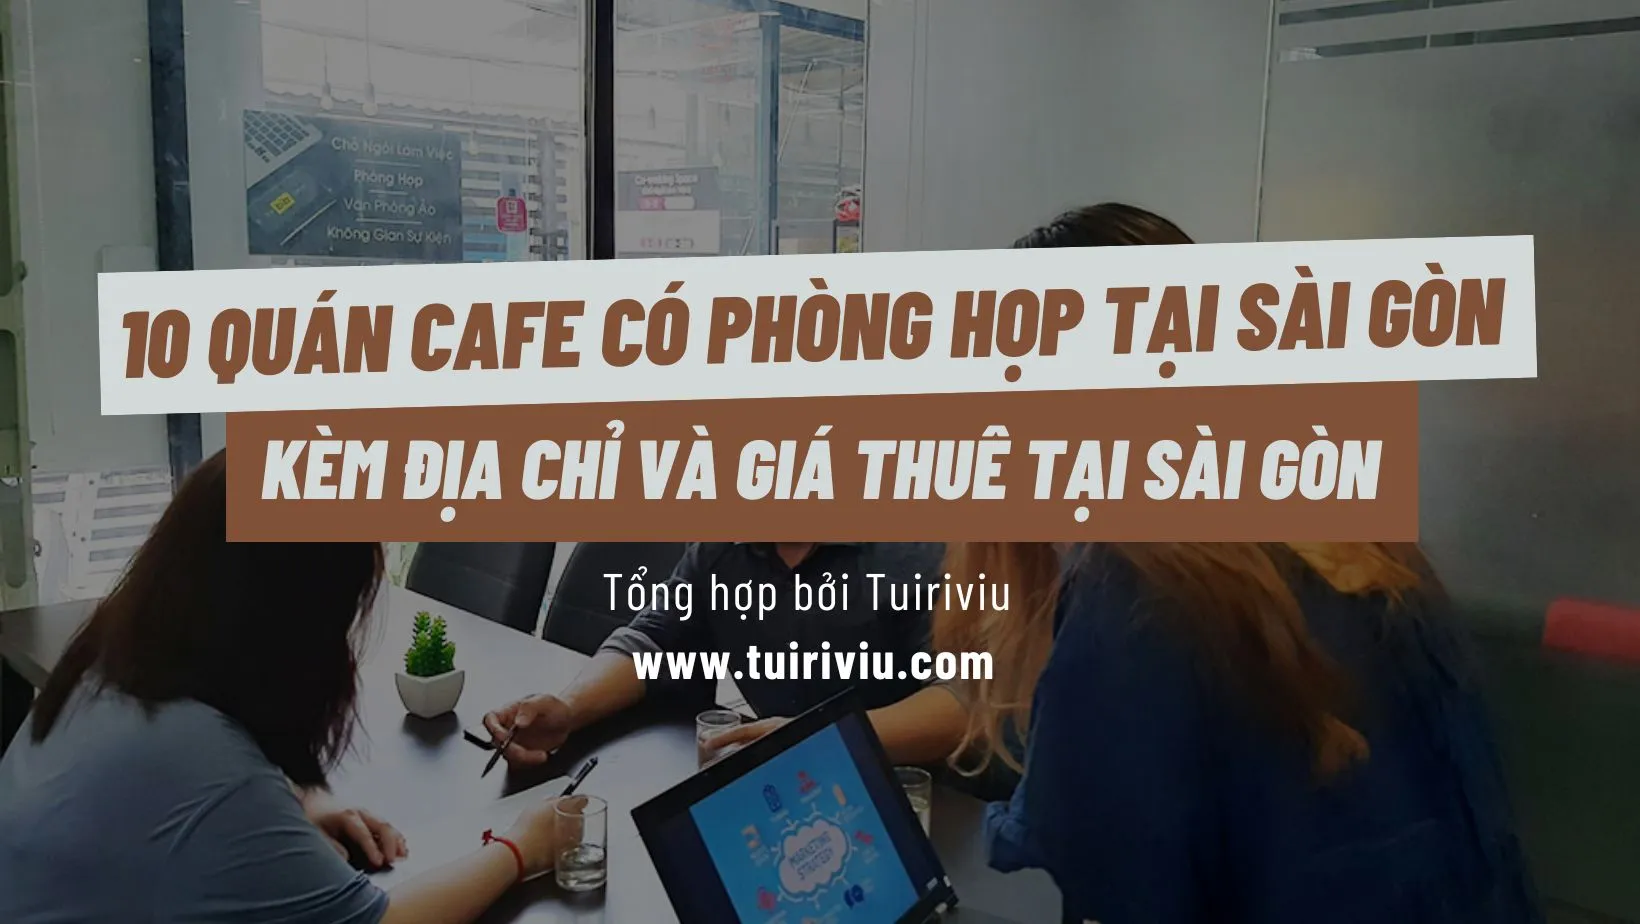 Quán cafe có phòng họp tuiriviu